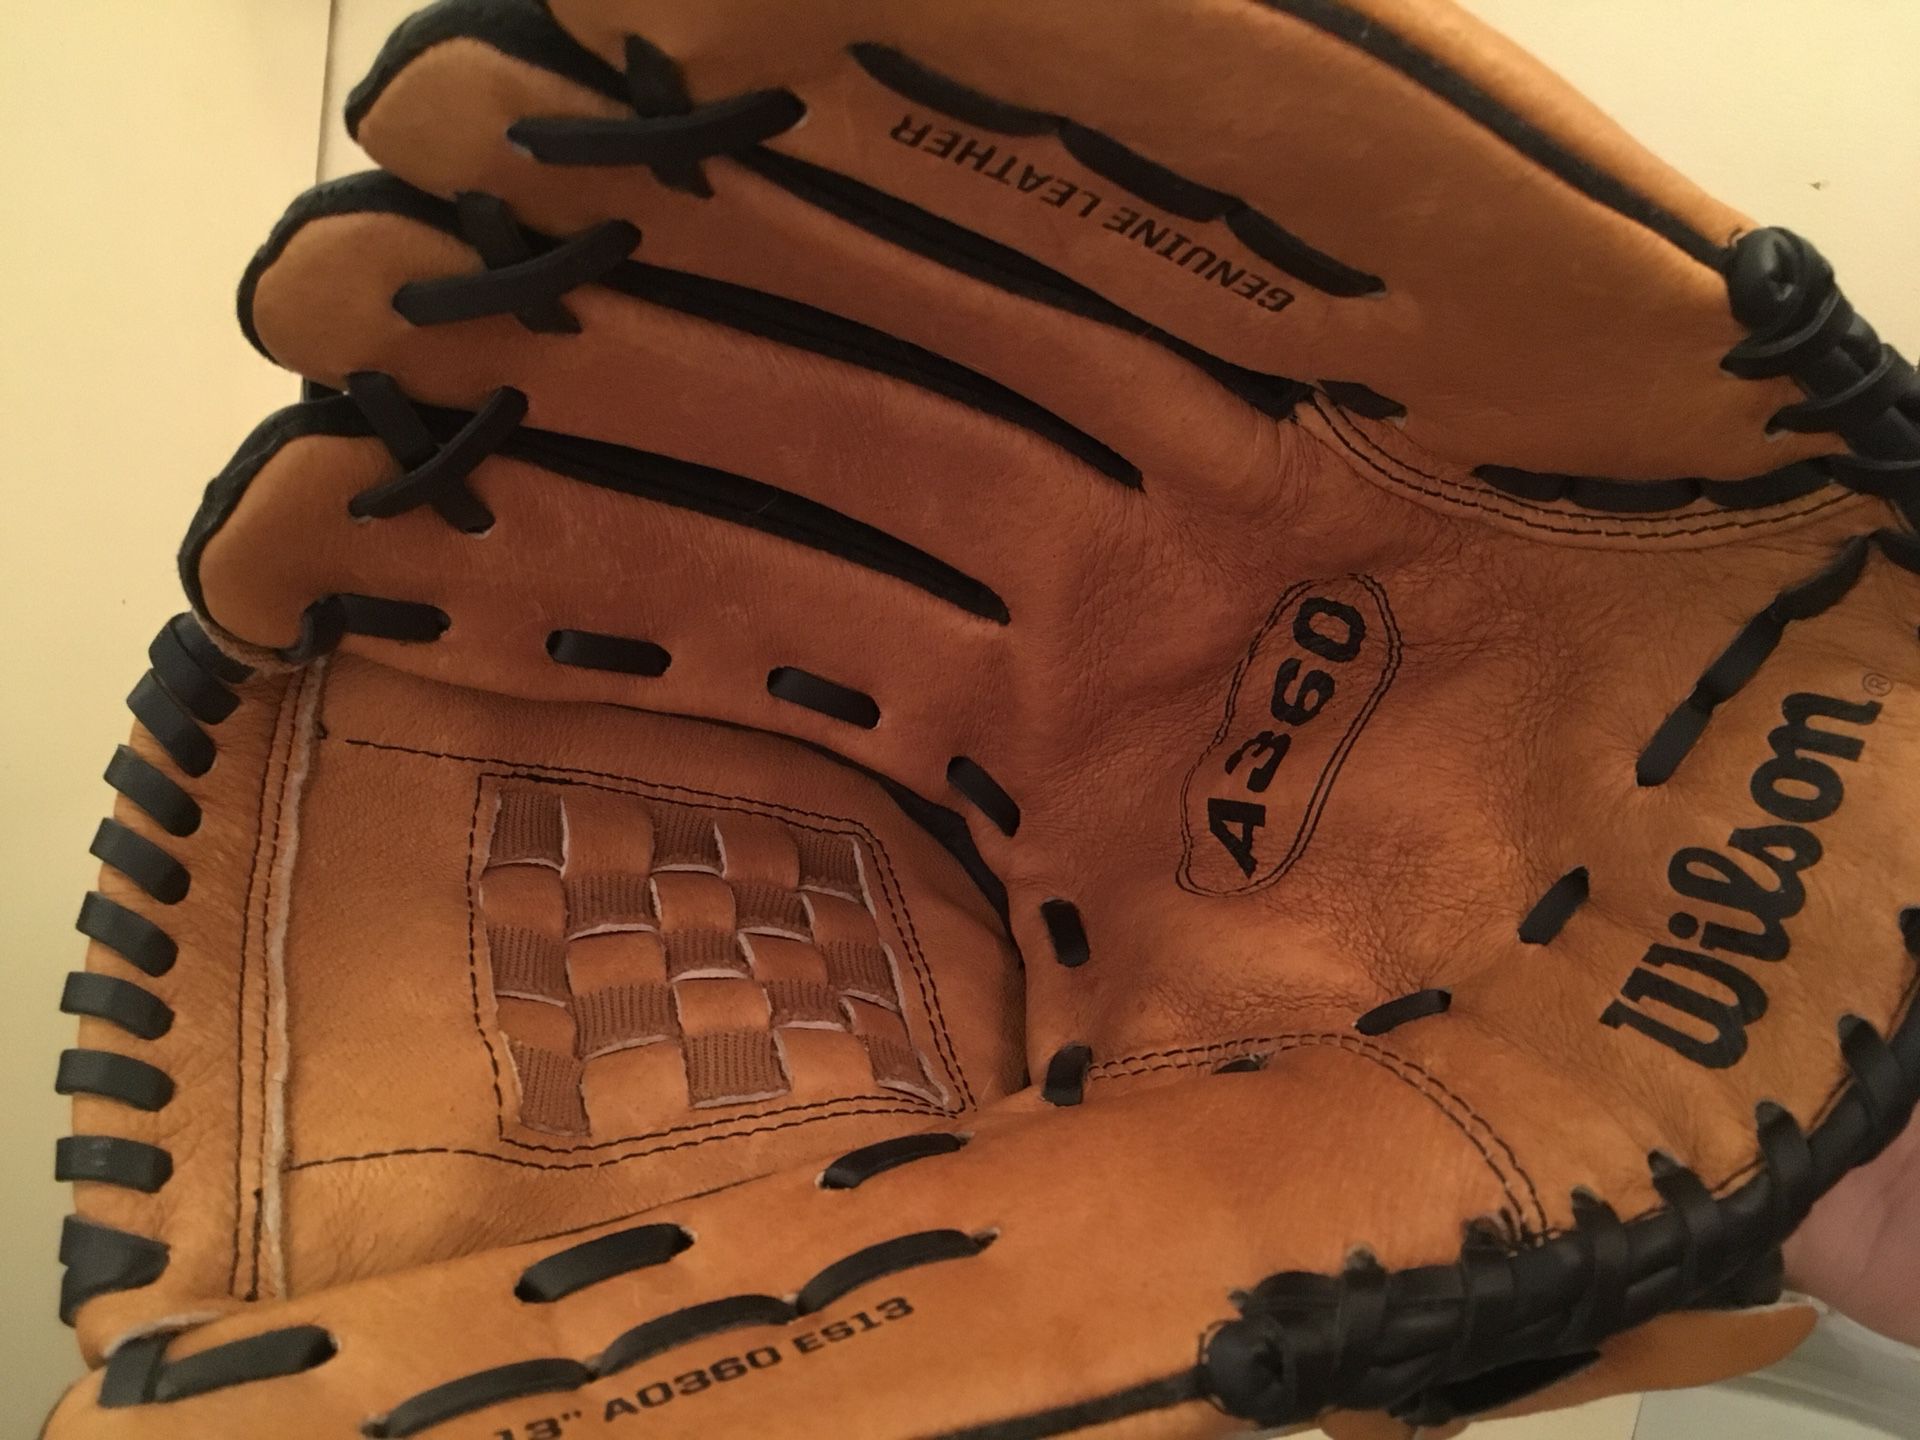 Wilson A360 softball glove. Left hand